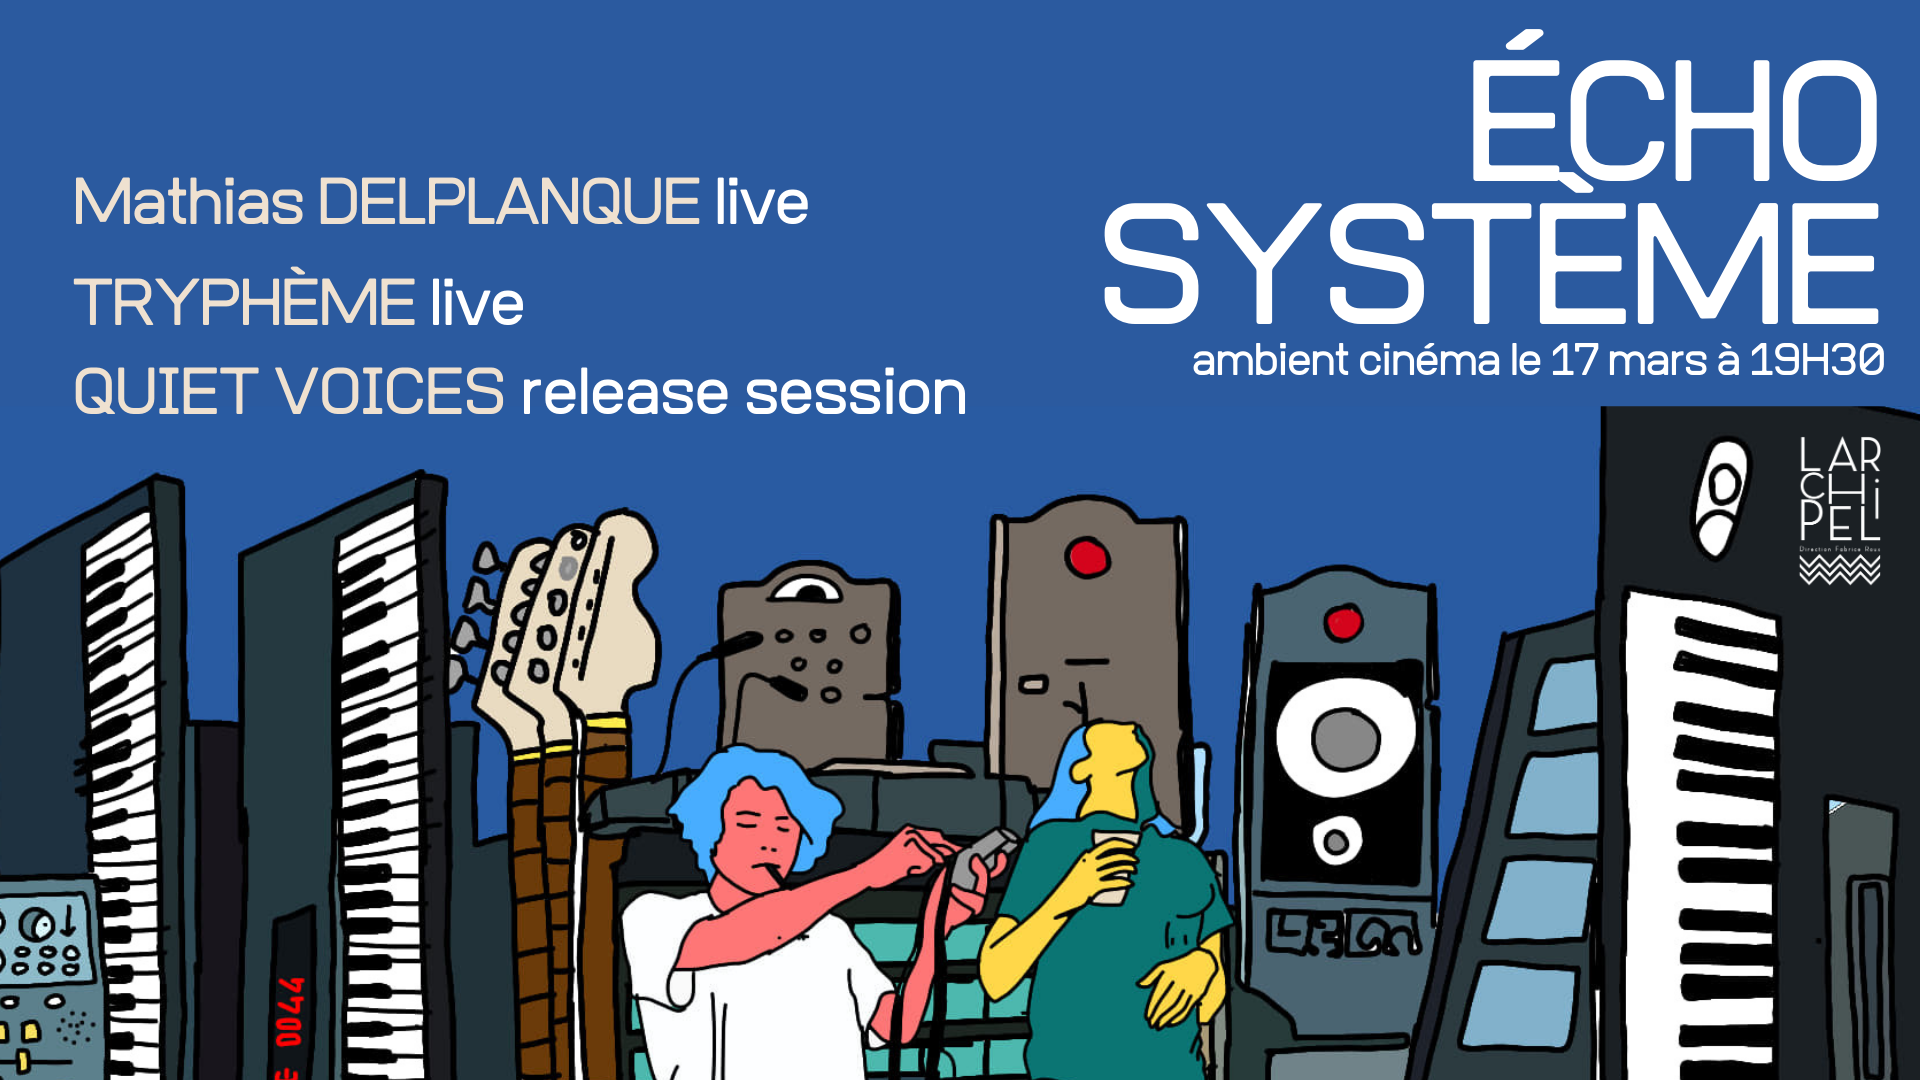 Echosystem: ambient cinema with Tryphème (live), Mathias Delplanque (live) & QUIET VOICES - Página frontal